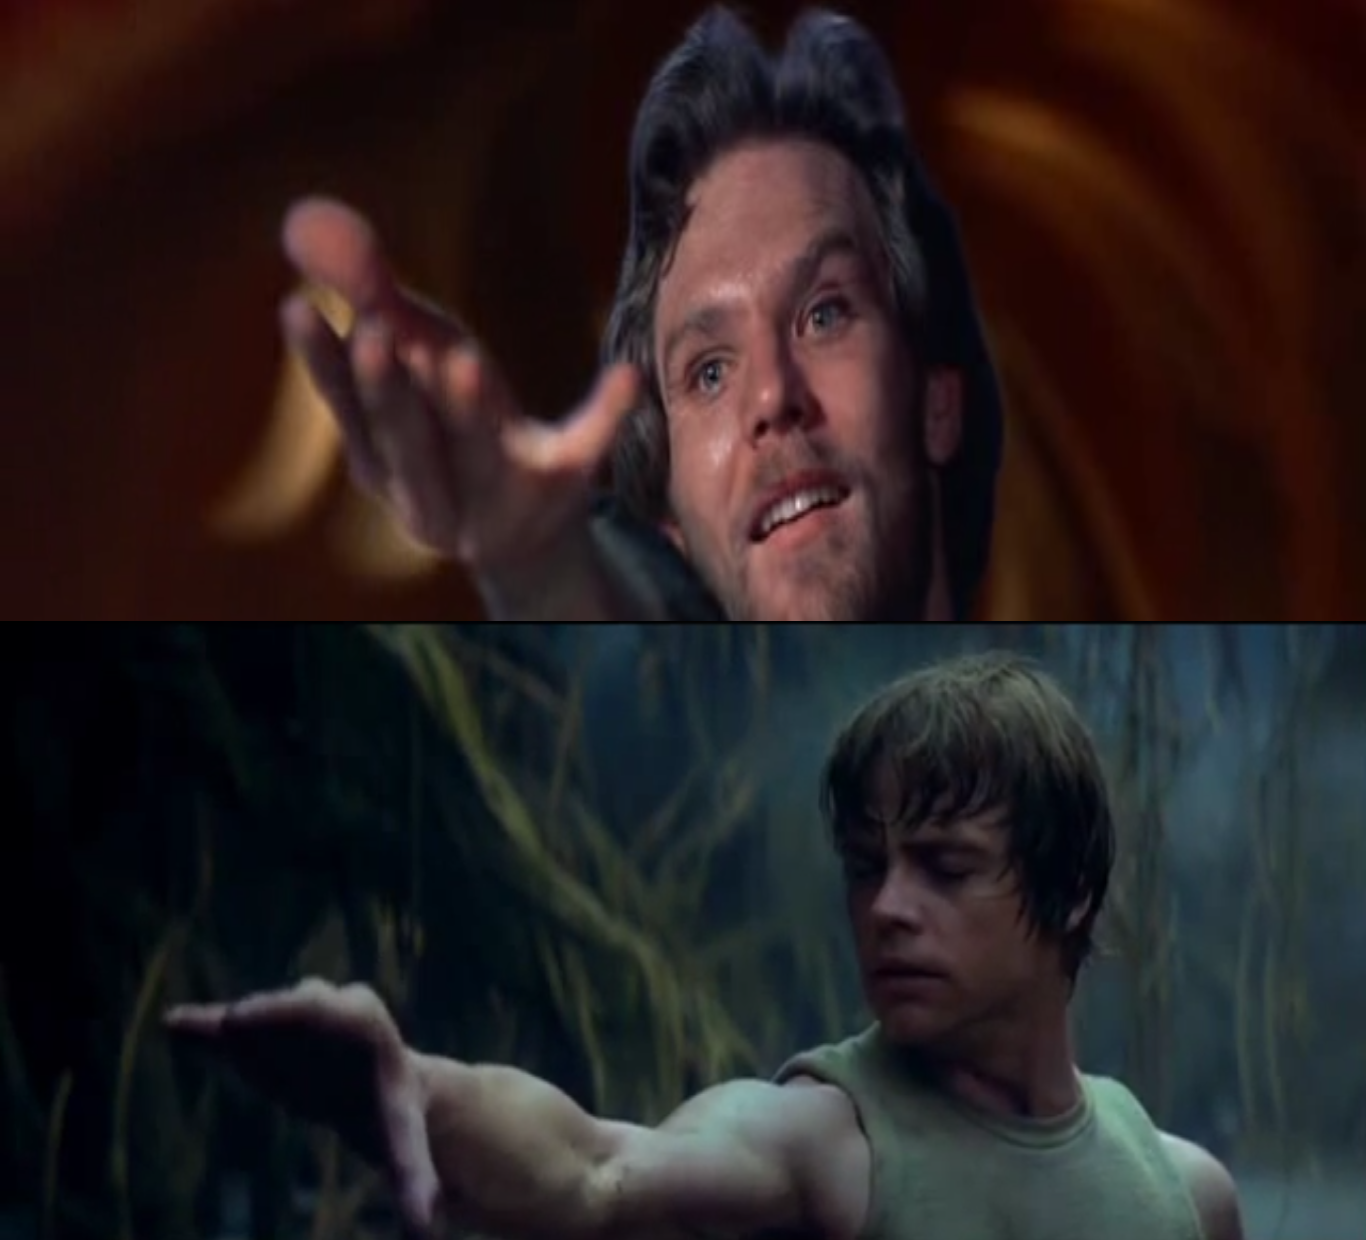 Colwyn (Krull) és Luke (Star Wars) használják az Erőt